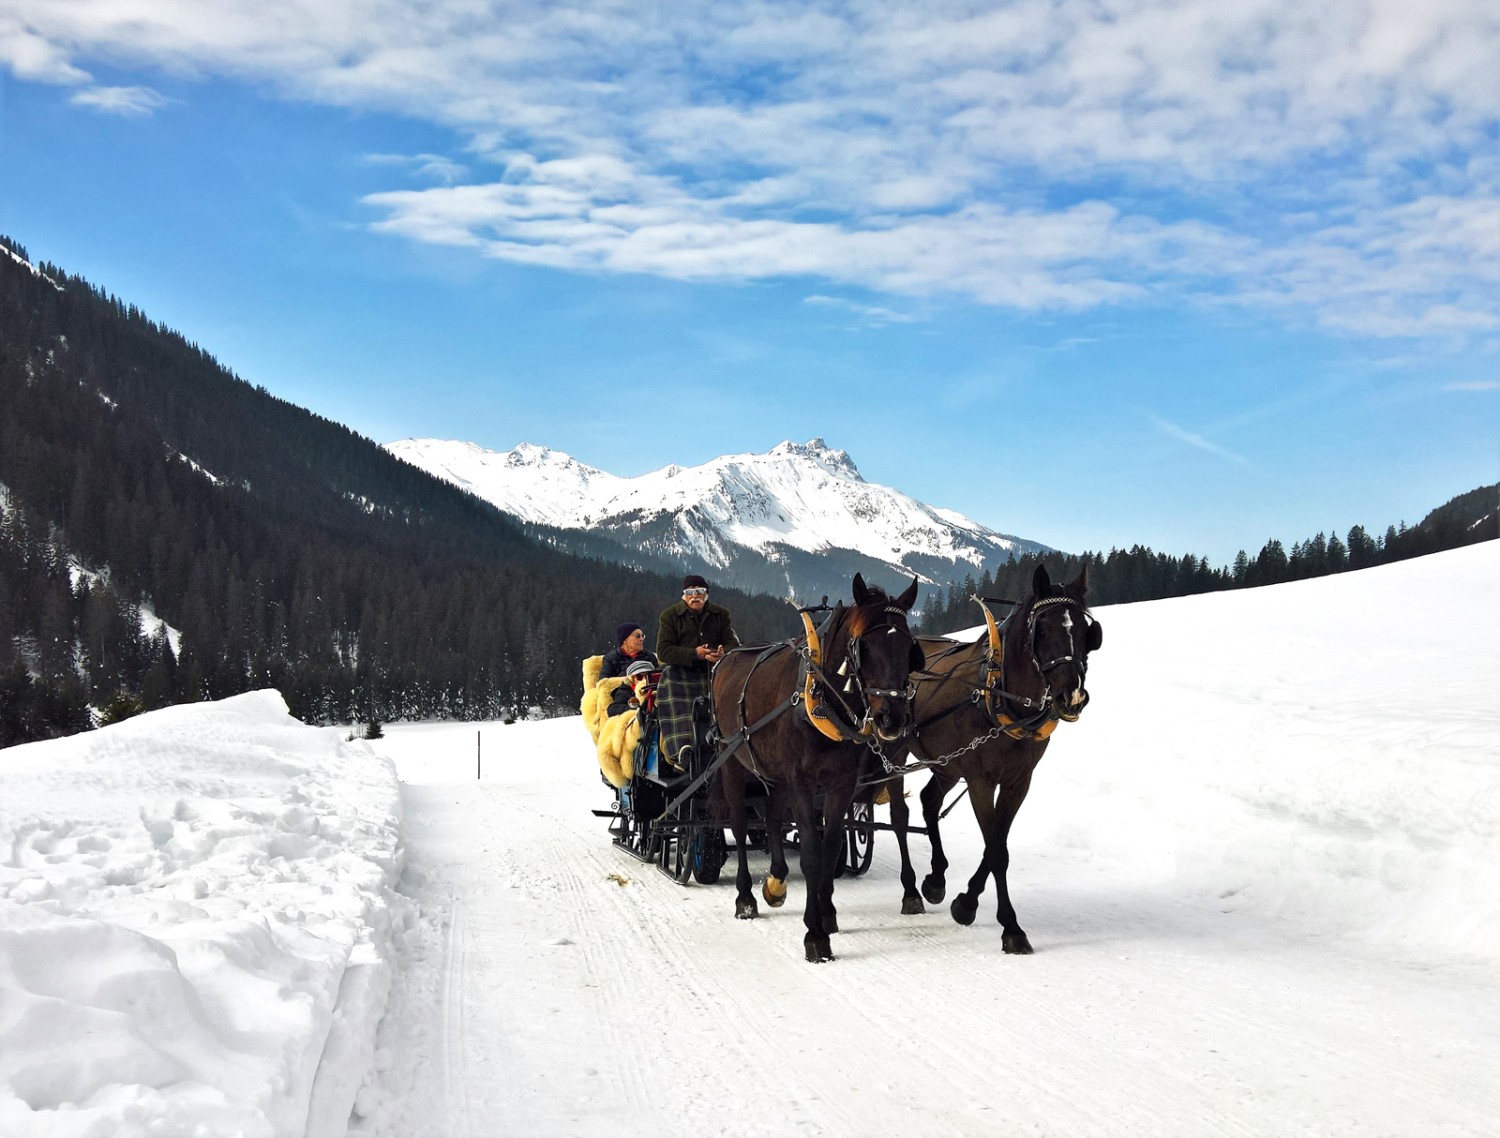 Sur le chemin de randonnée hivernale, seules les calèches peuvent circuler. Photo: Andreas Staeger